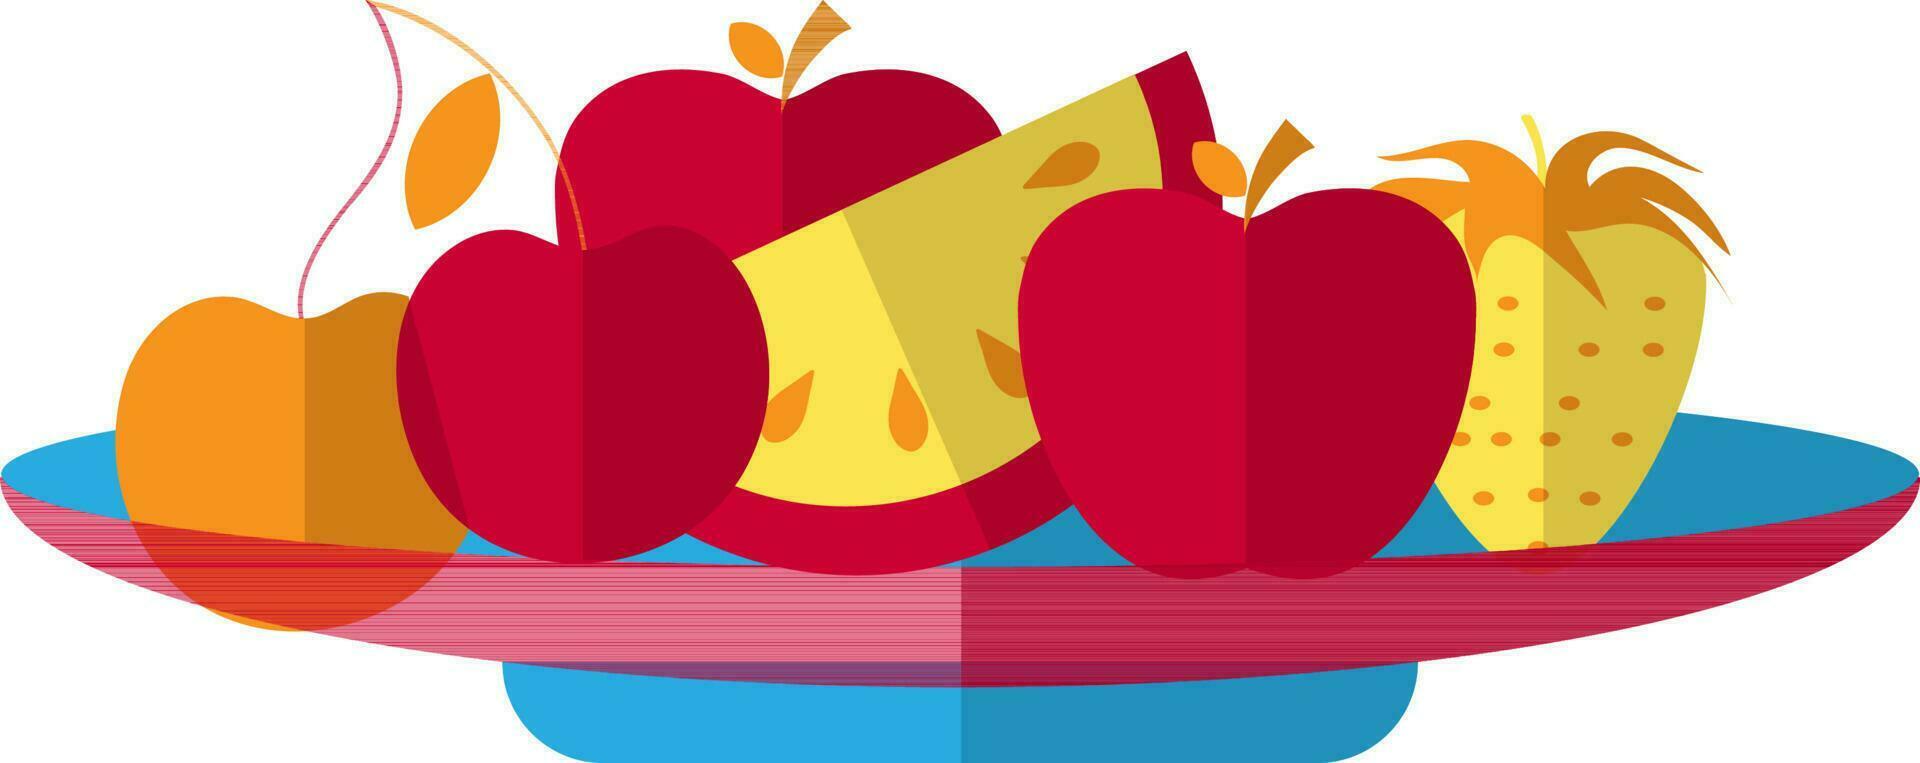 äpplen, vattenmelon, jordgubb och vindruvor på palte. vektor